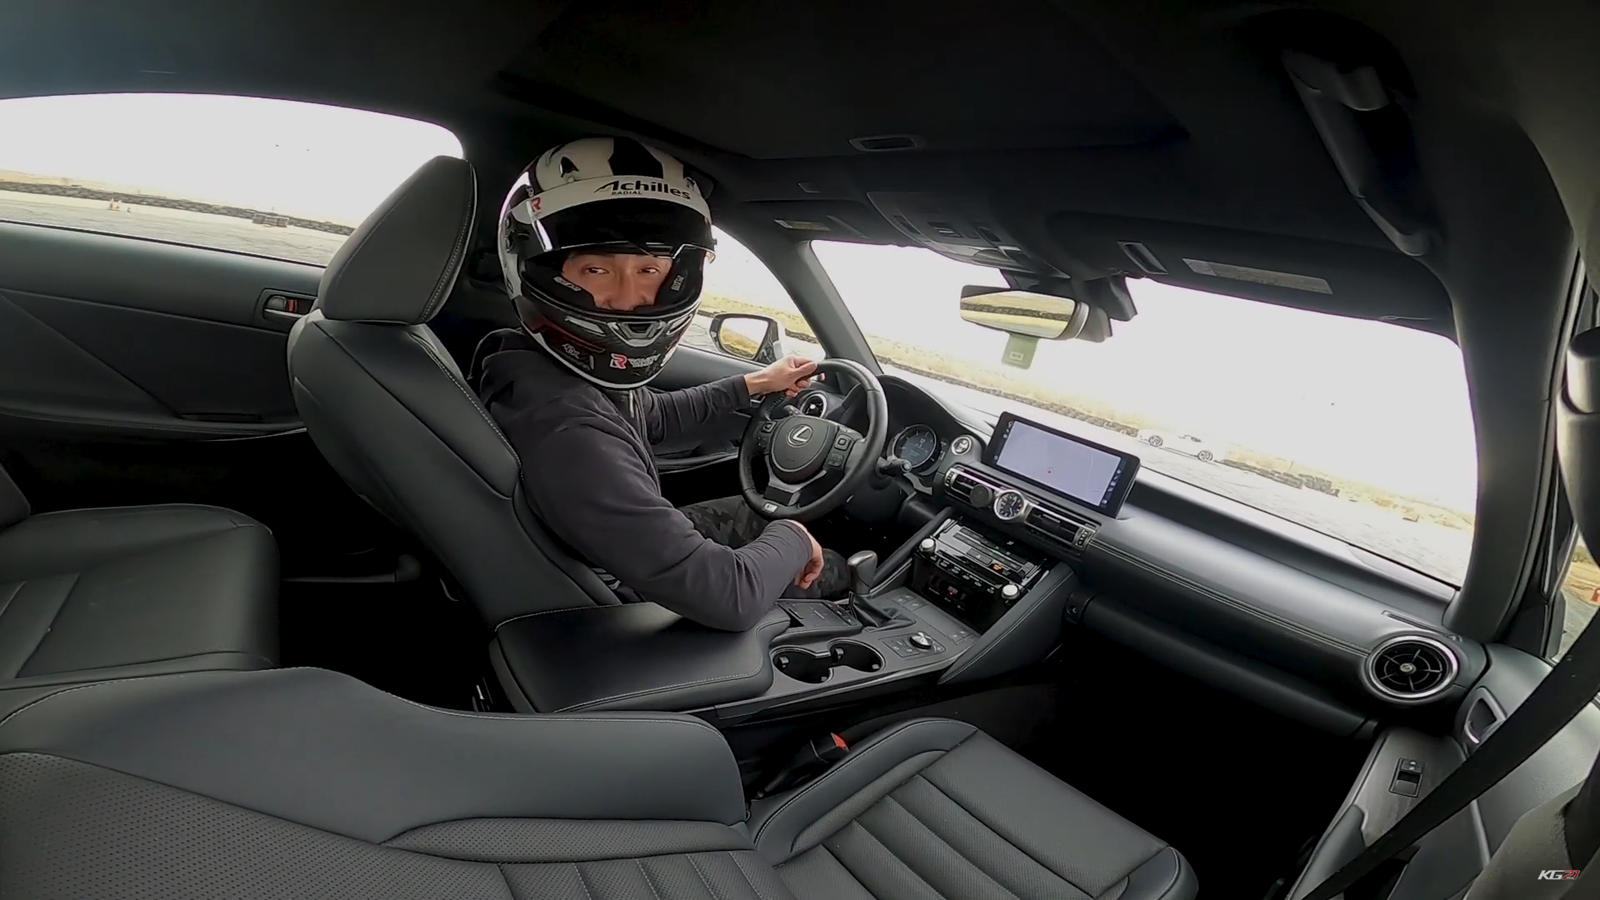 "بالفيديو" سائق فورمولا يختبر قدرات لكزس IS اف سبورت 21